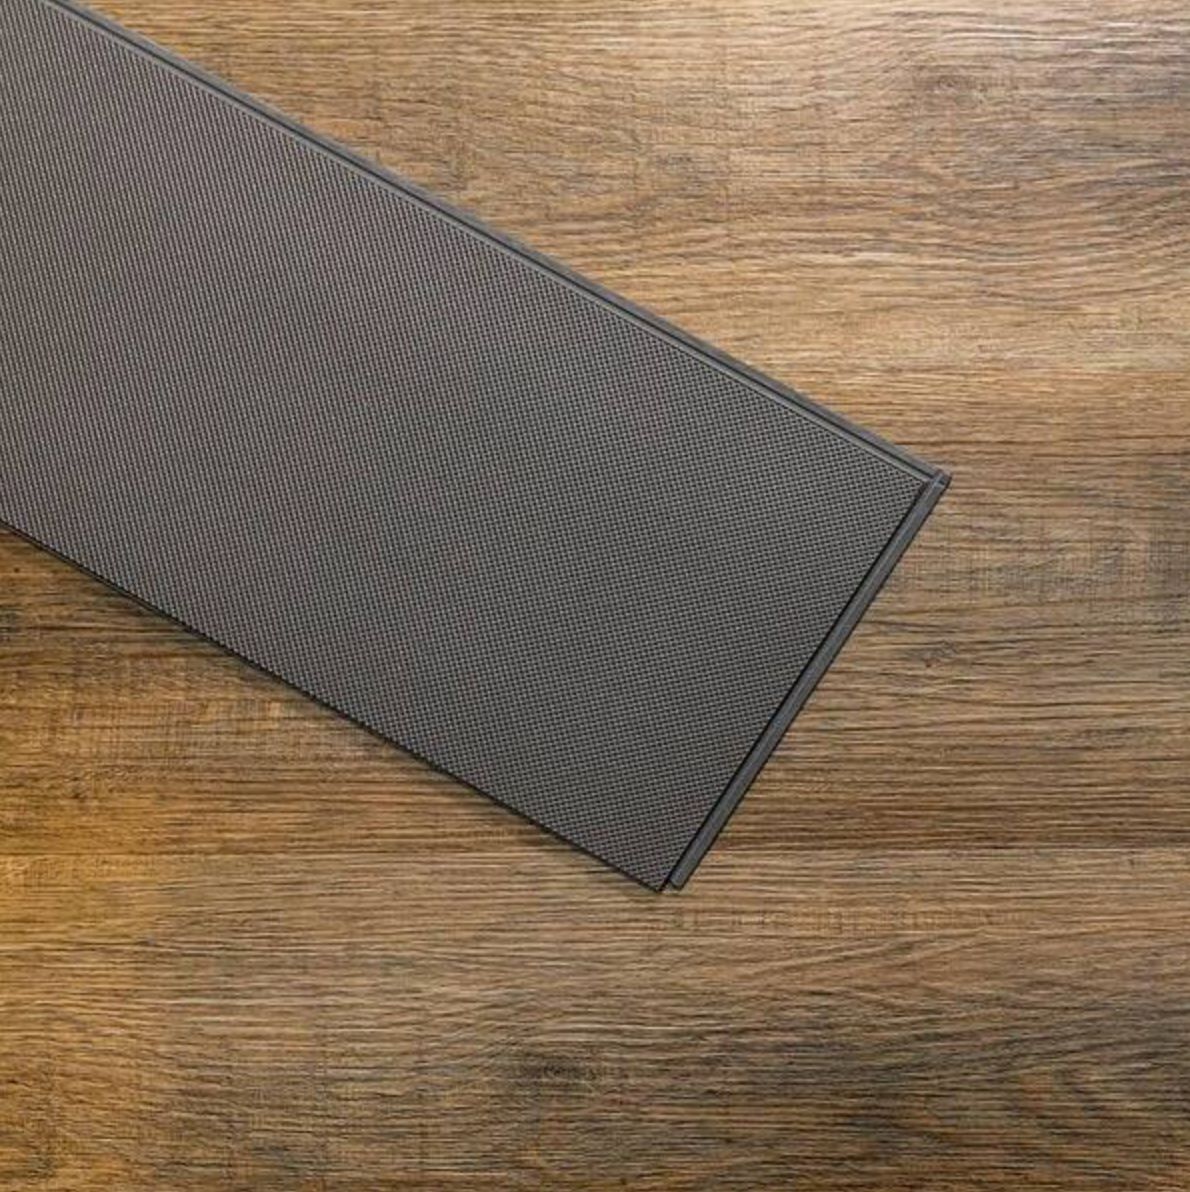 Vista Sintra Oak Waterproof Click Lock Vinyl Plank Flooring - 7.1 in. W x 48 in. L x 6 mm T